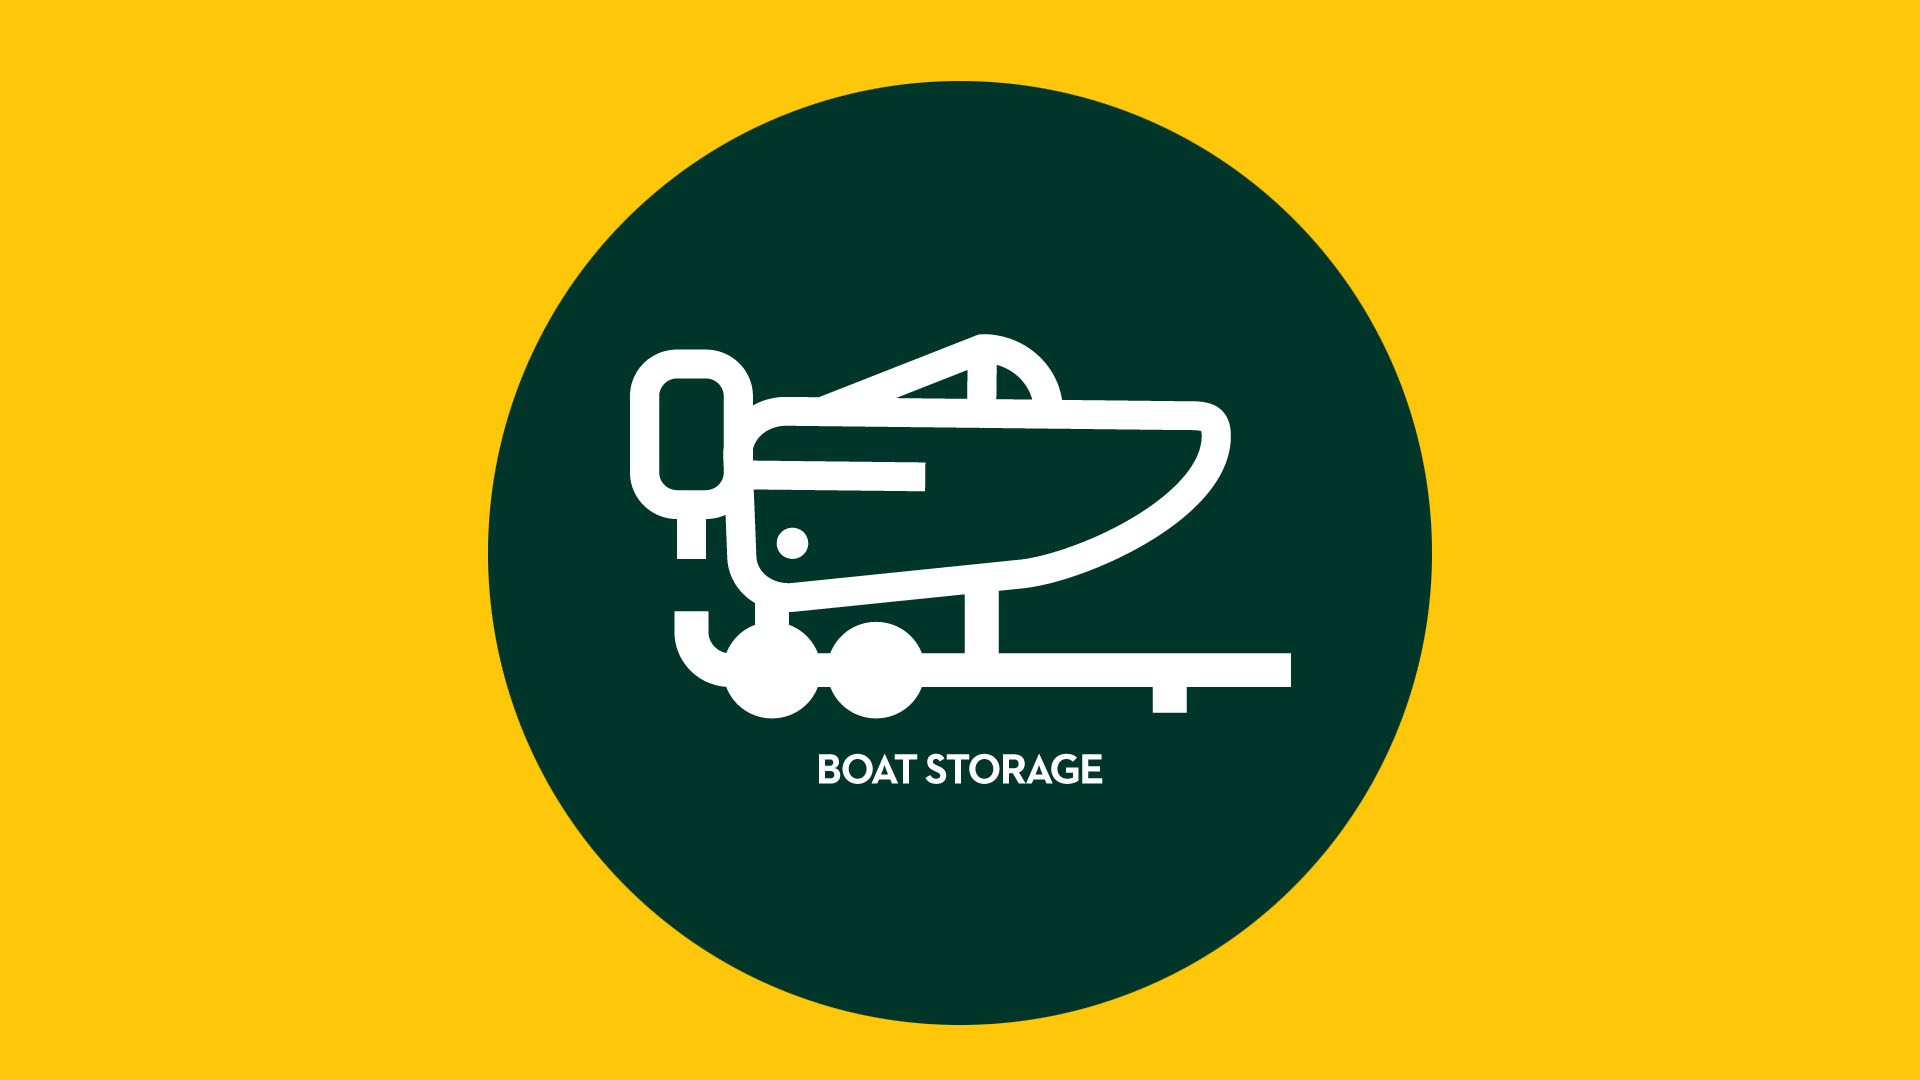 Boat Storage - Secure Self Storage, Cramlington, Northumberland 01